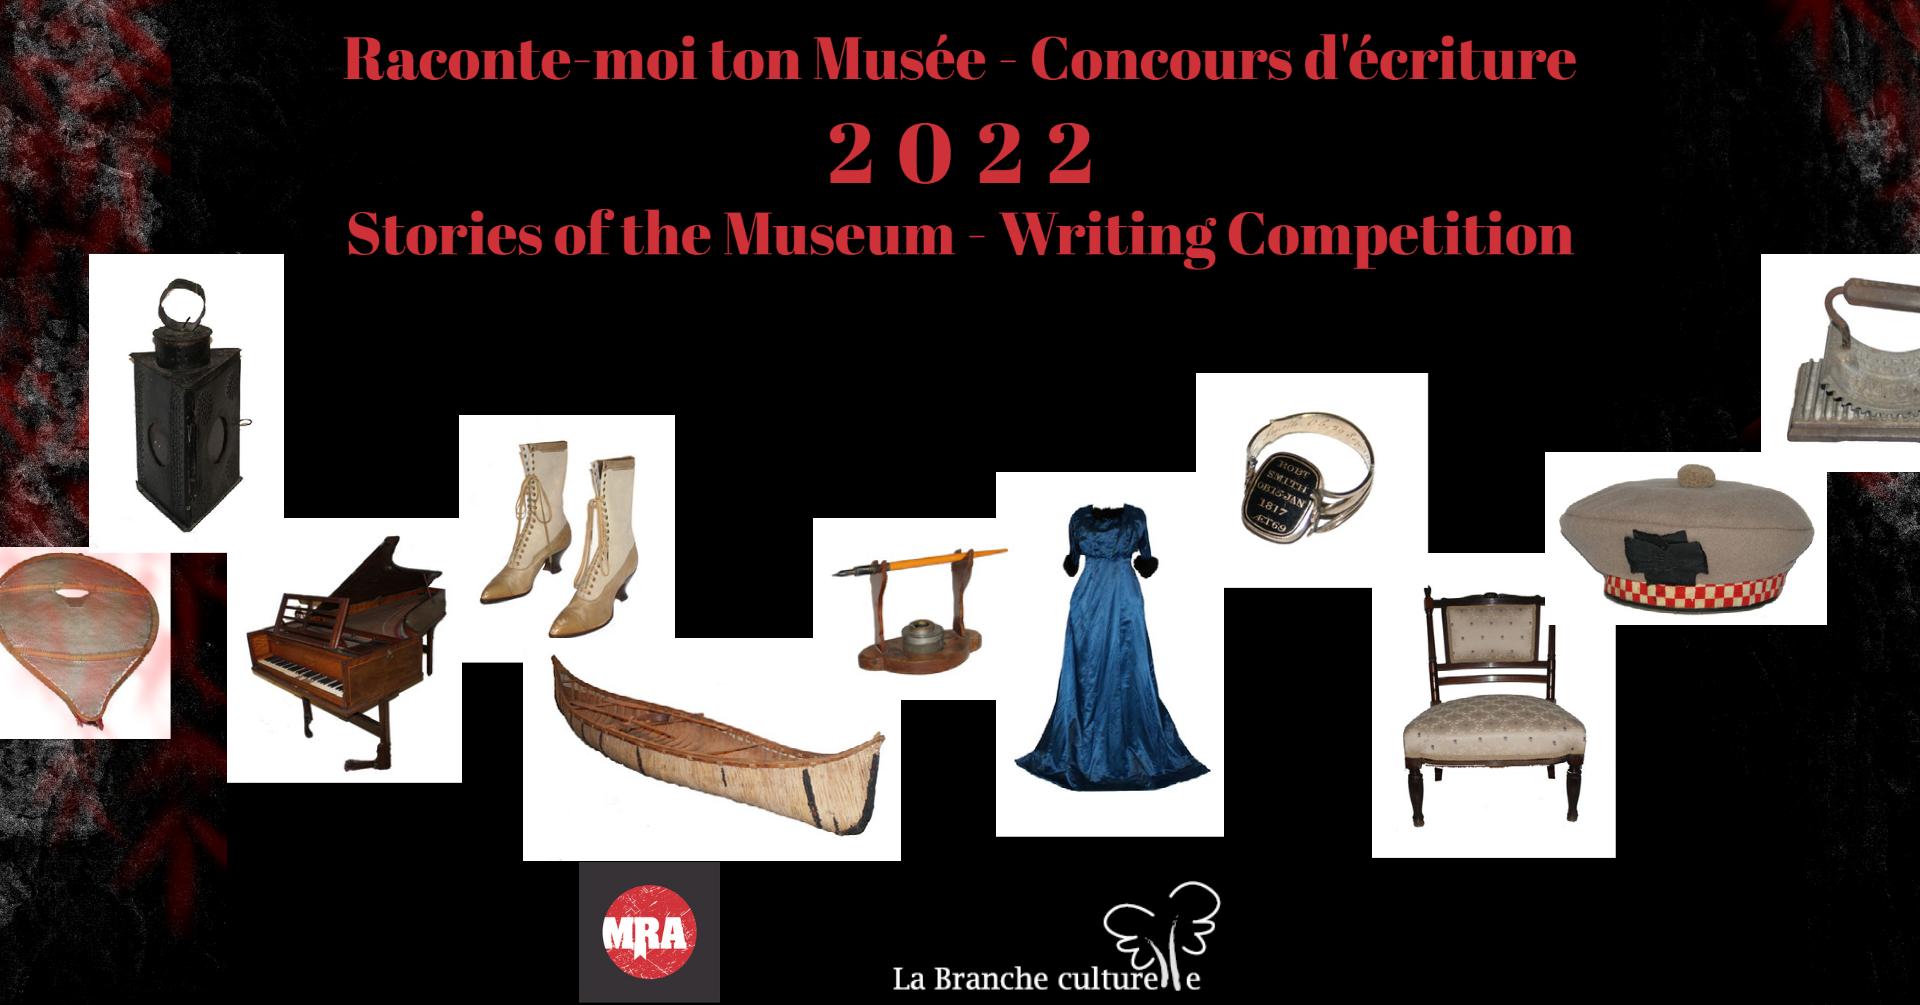 Musée régional d’Argenteuil and Branche culturelle announce writing contest finalists